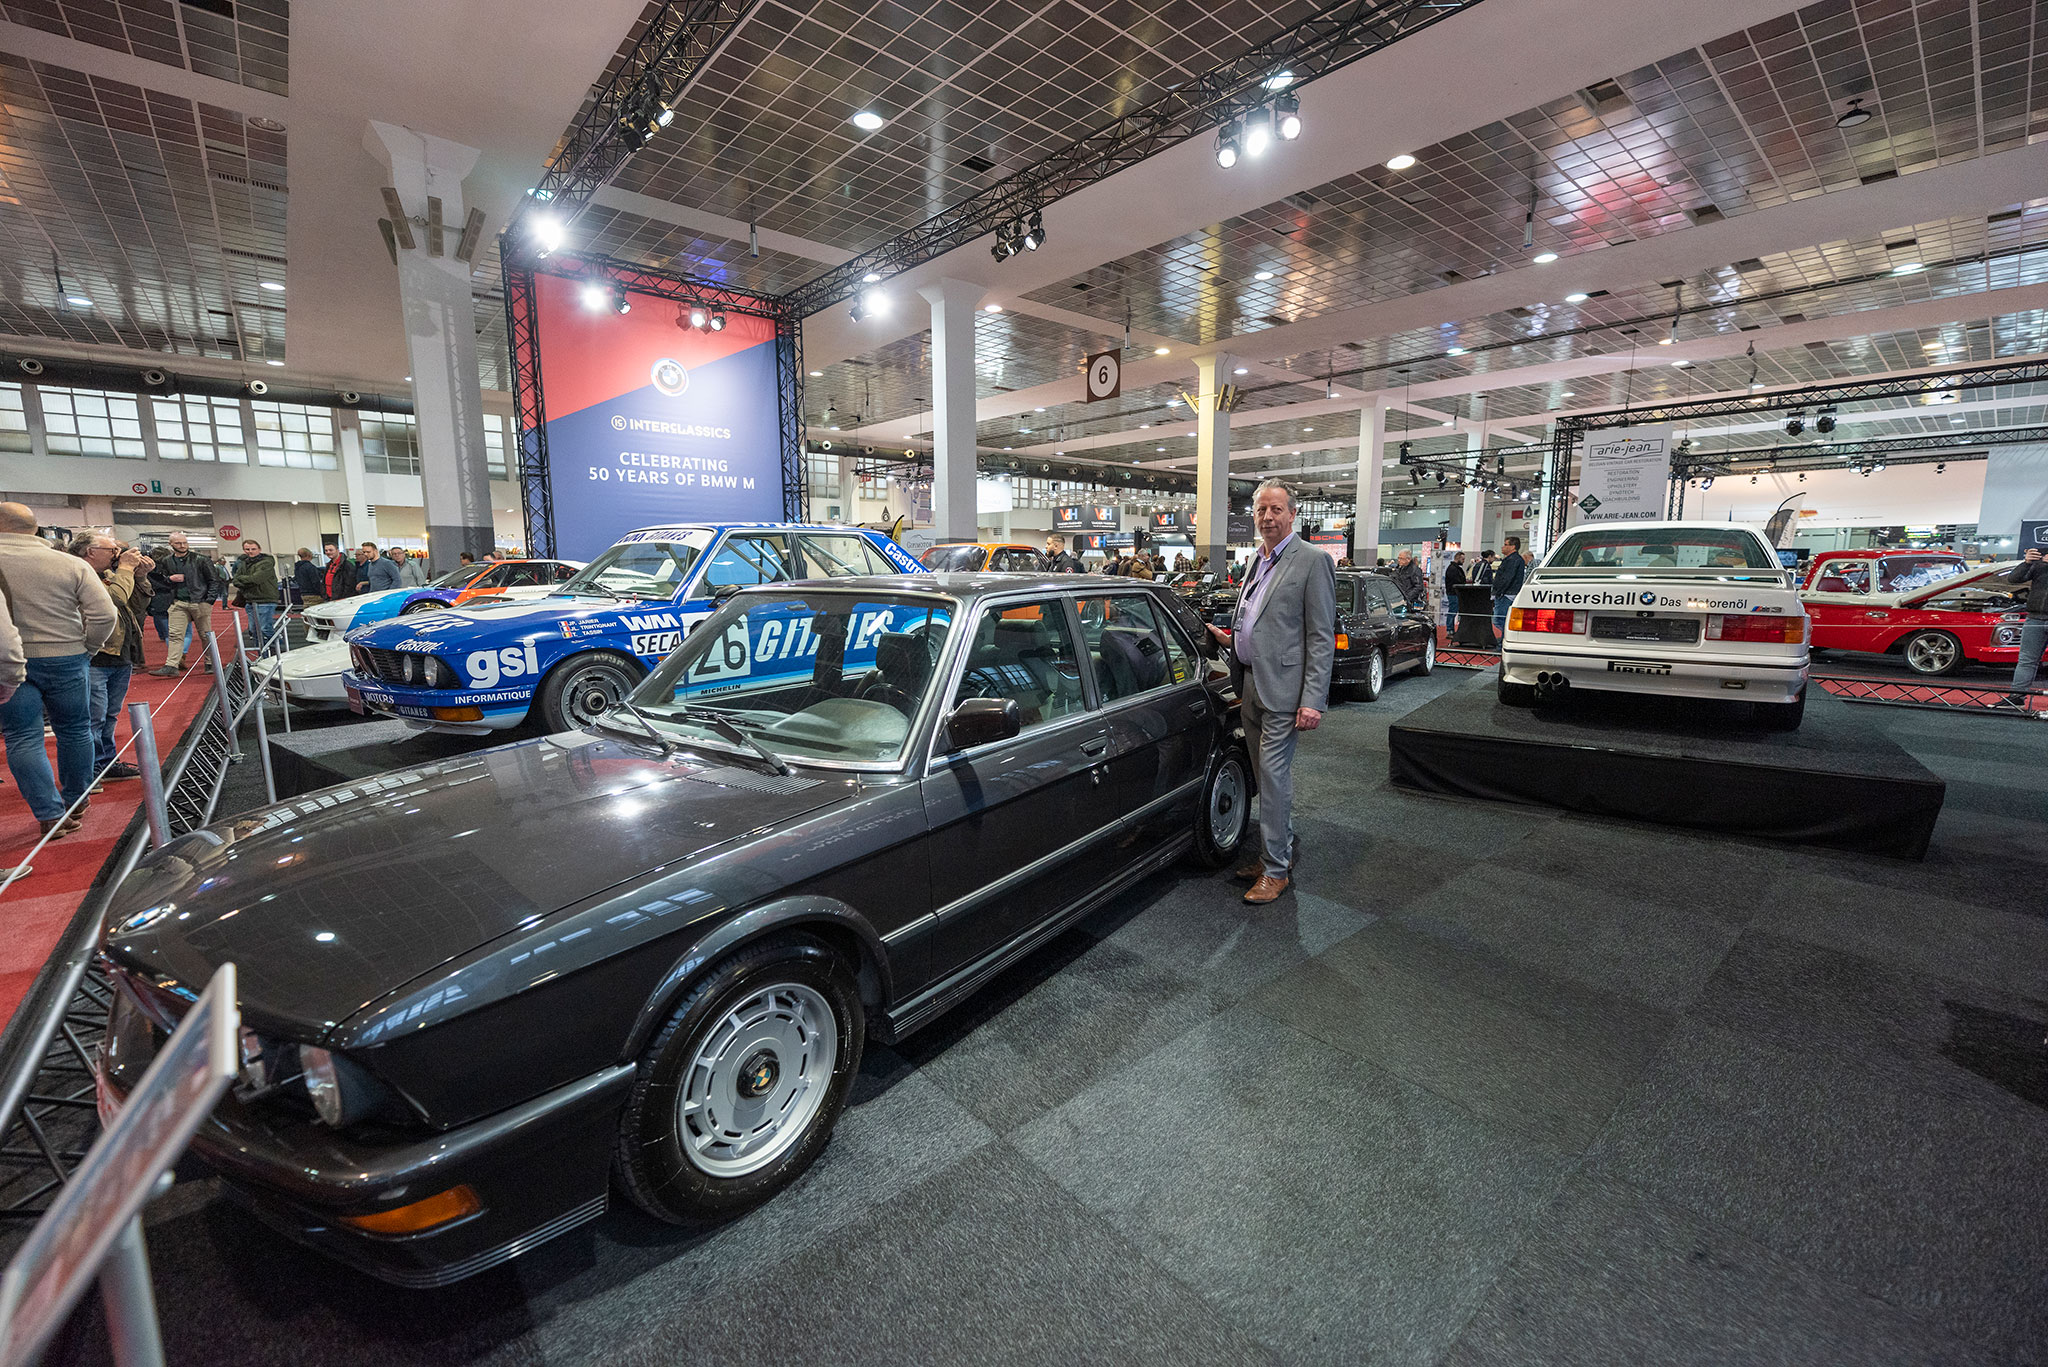 Un peu plus de 2000 exemplaires pour cette M5 de 1987 équipée du moteur de la M1 de 286 chevaux - 50 ans de BMW M.